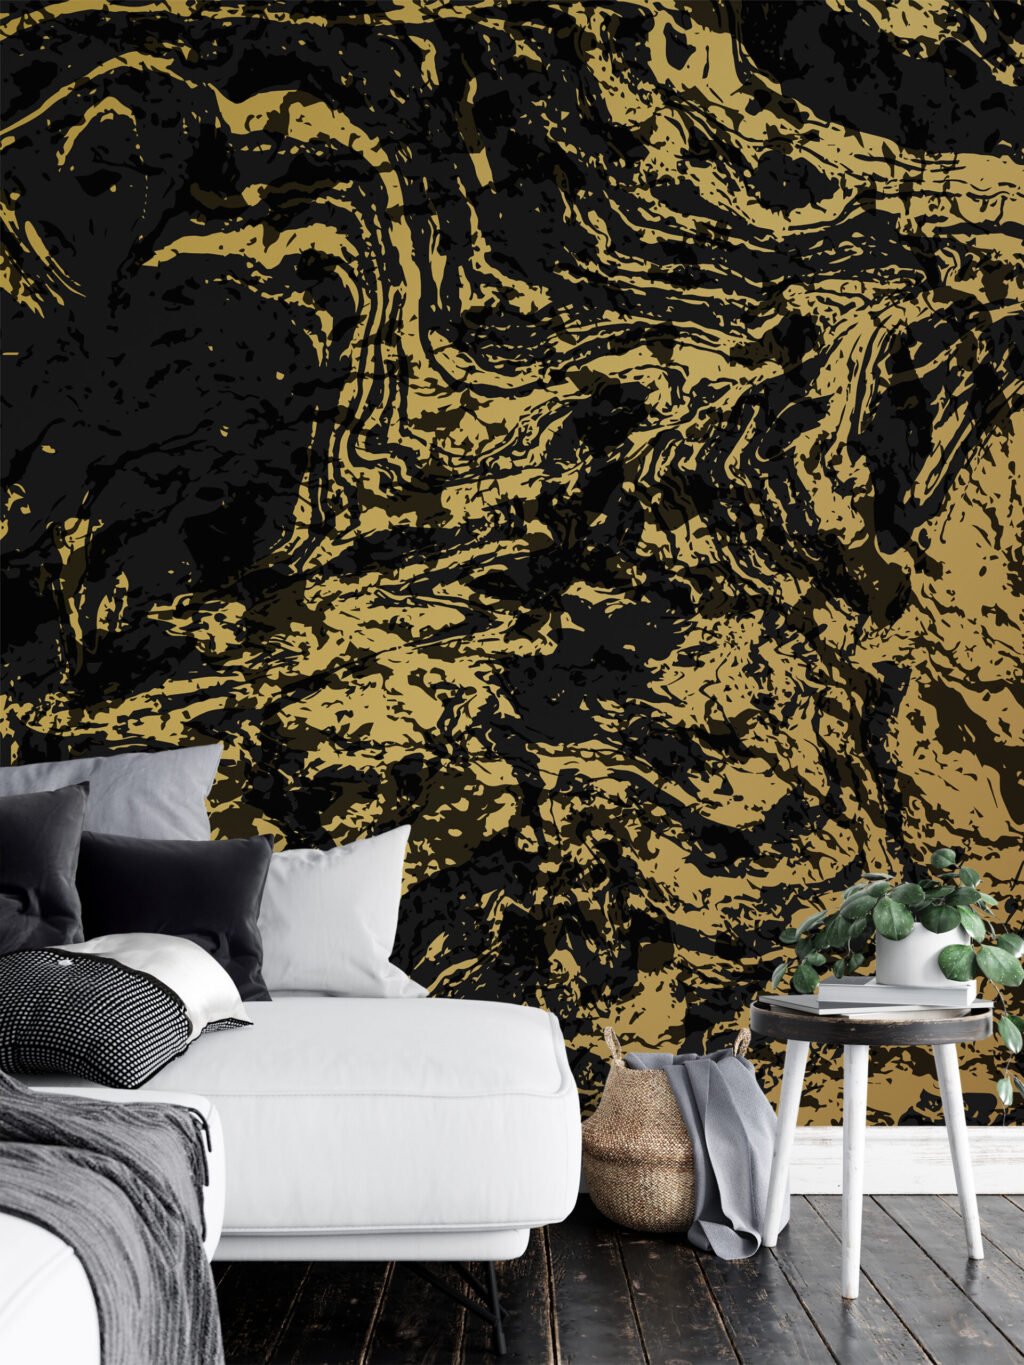 Siyah ve Altın Soyut Tasarım Duvar Kağıdı, Mermer Sarmal Desenli 3D Duvar Kağıdı Mermer Duvar Kağıtları 5